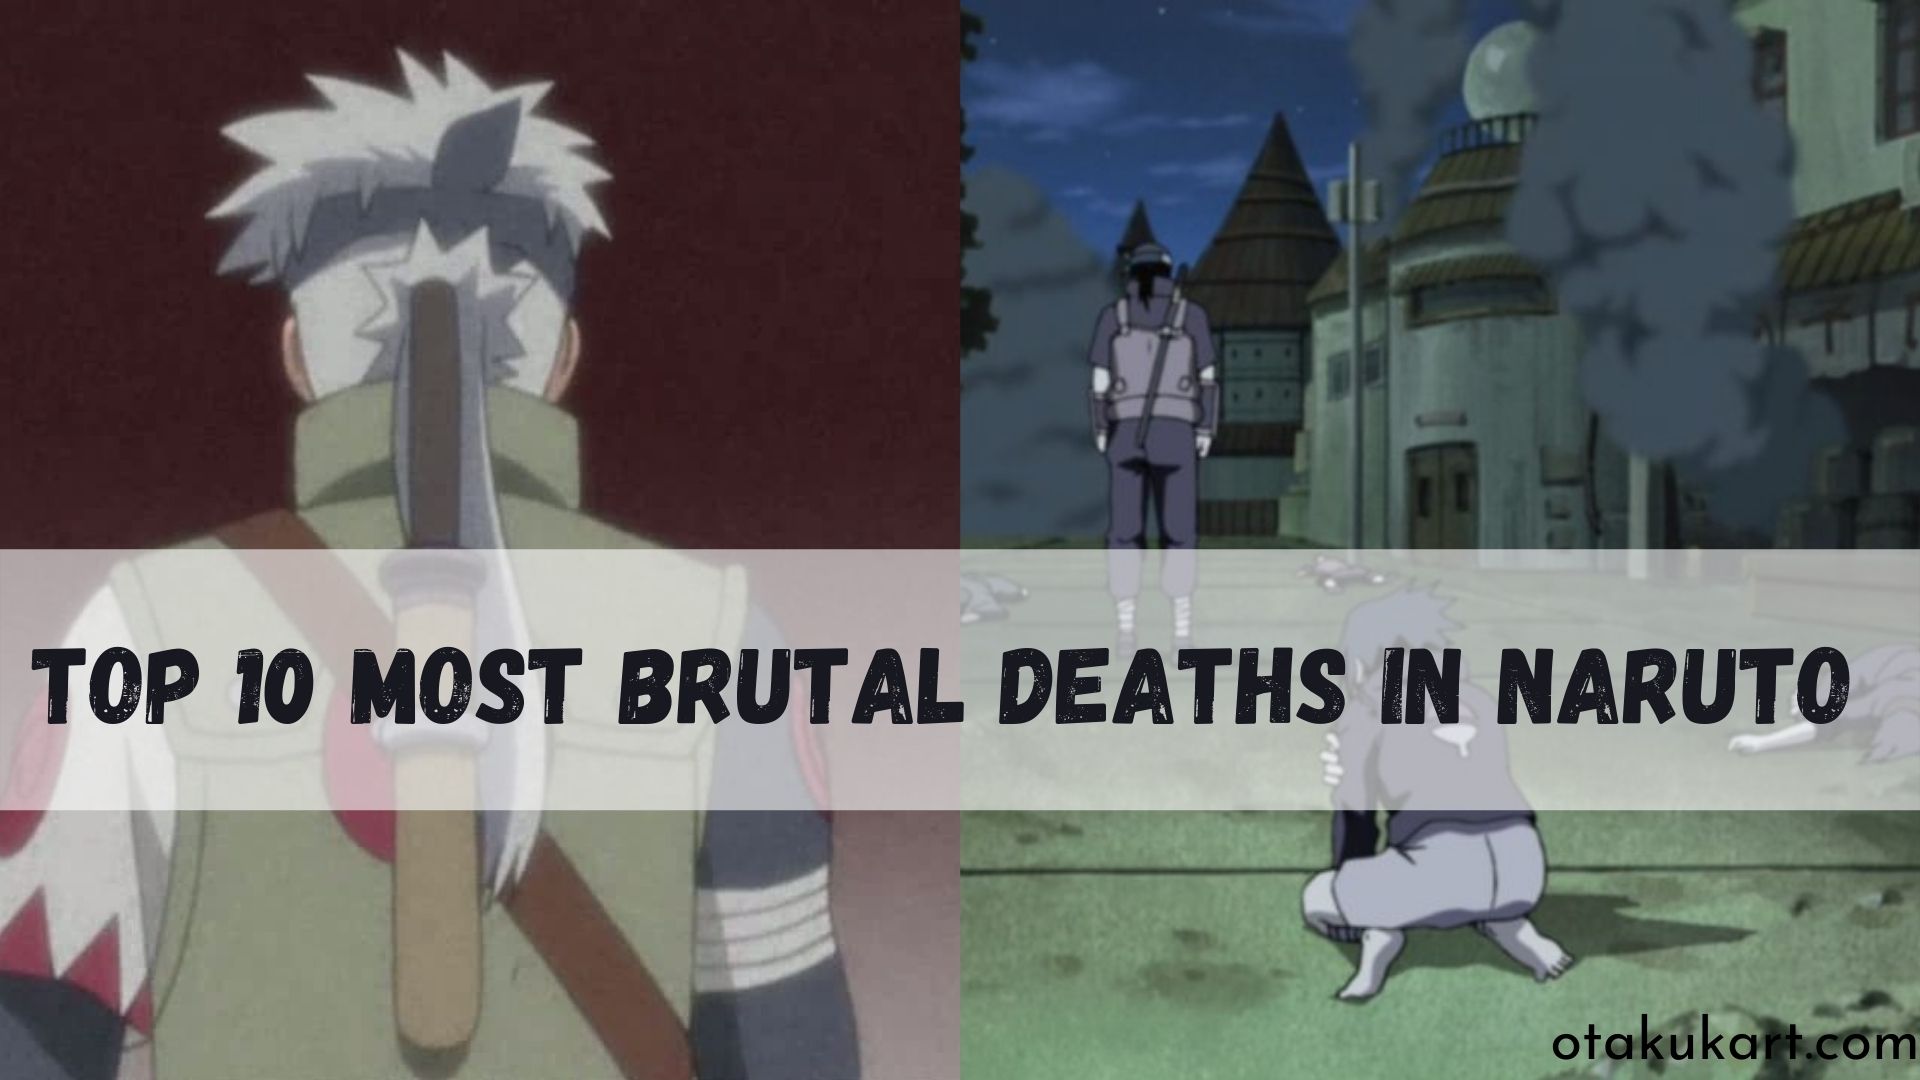 Top 10 Most Brutal Deaths In Naruto That Shocked Everyone - OtakuKart